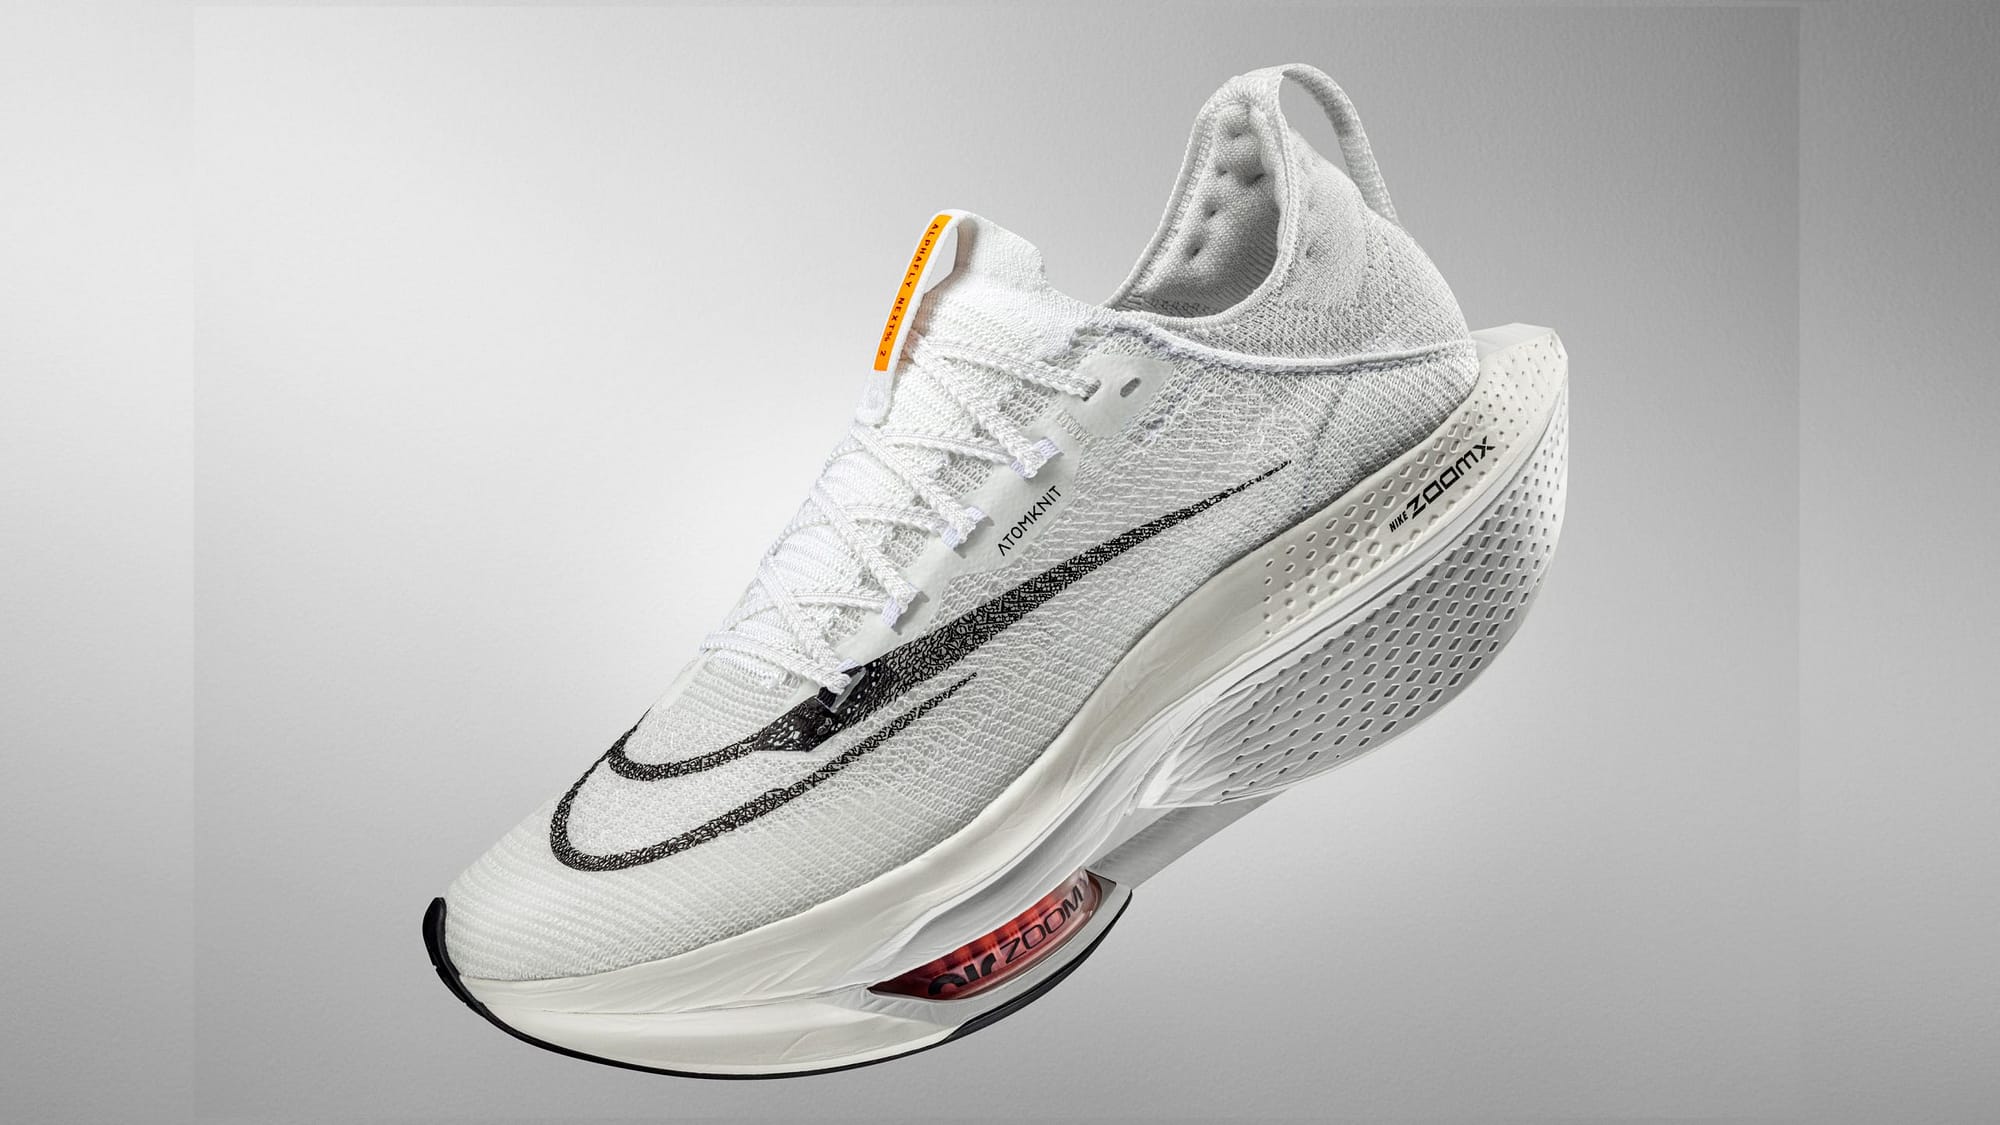 Sepatu lari Alphafly terbaru Nike adalah impian setiap pelari maraton